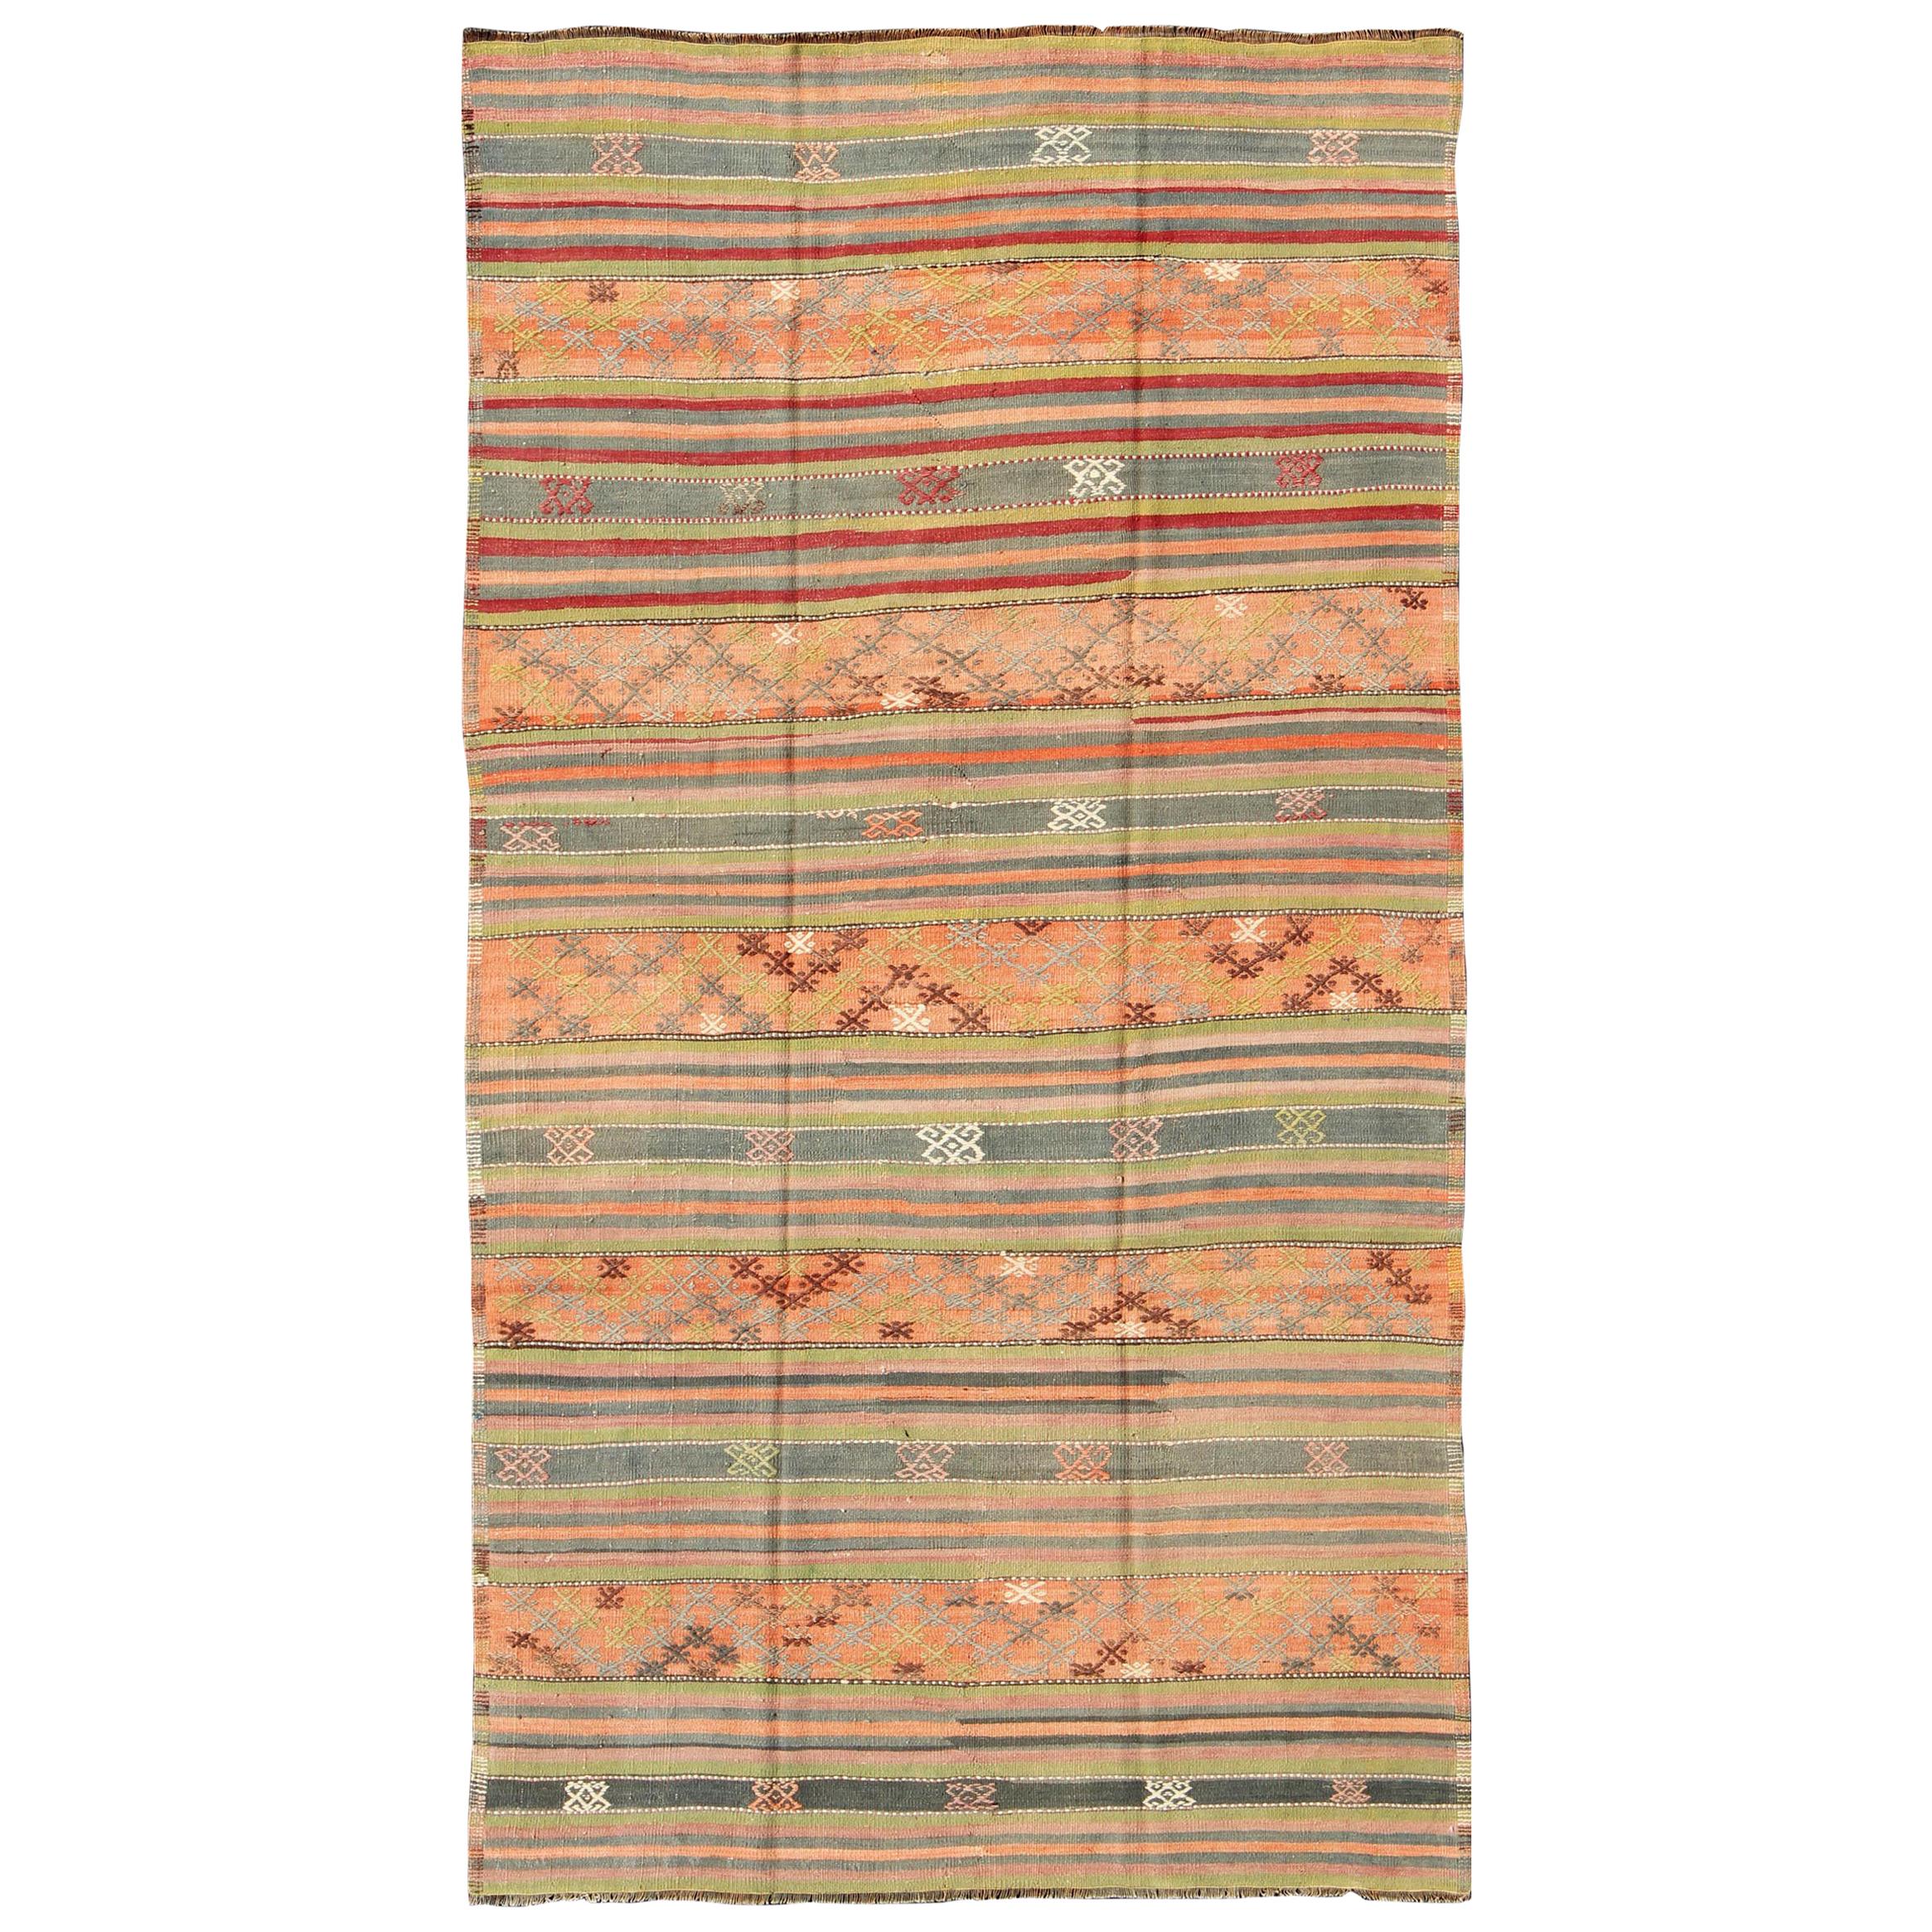 Türkischer Vintage-Kelim-Teppich mit geometrischen Formen und bunten Streifen